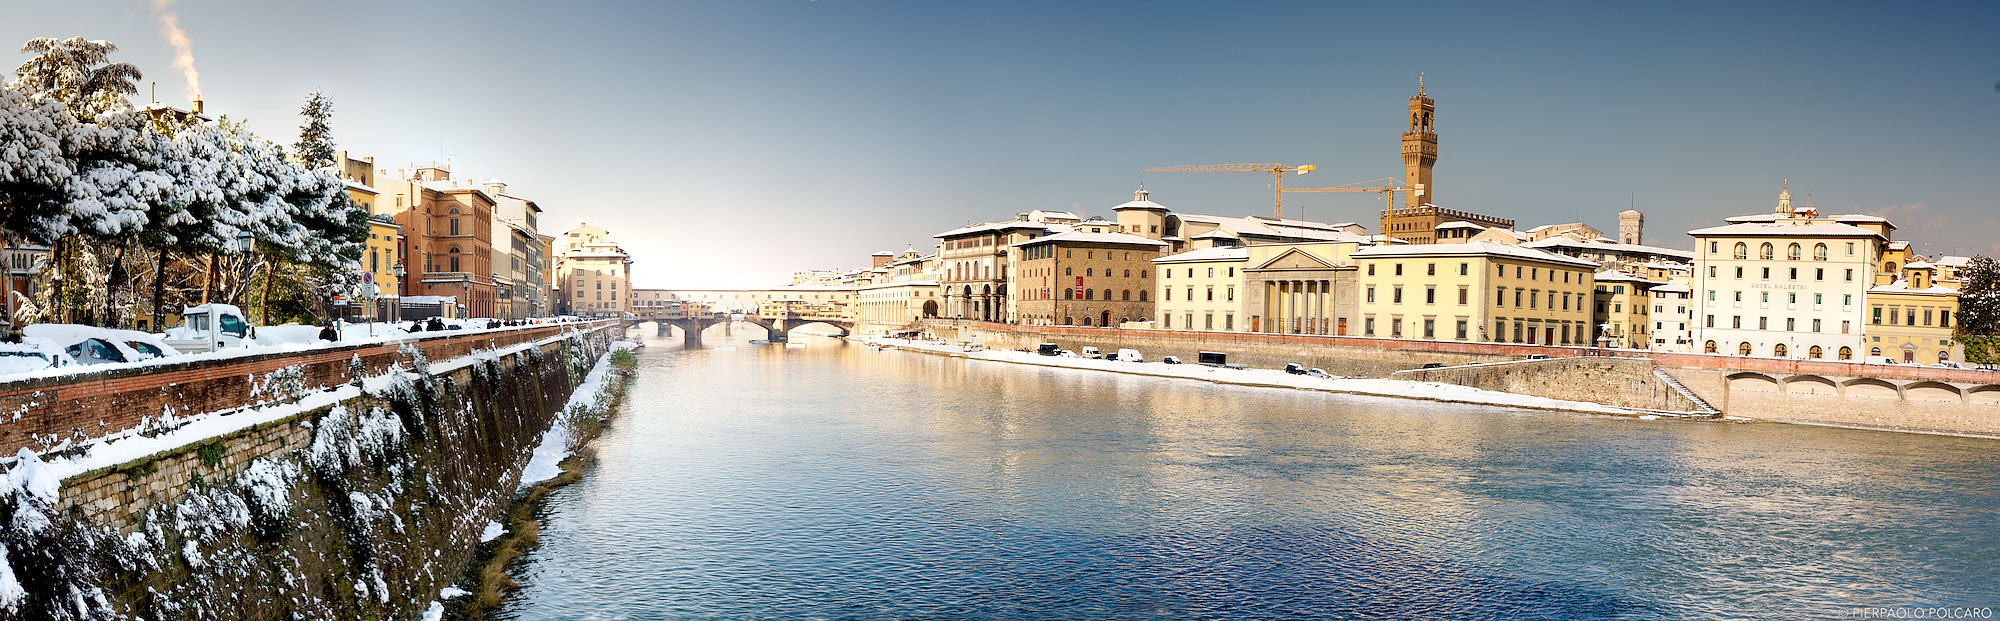 Neve sul Ponte Vecchio